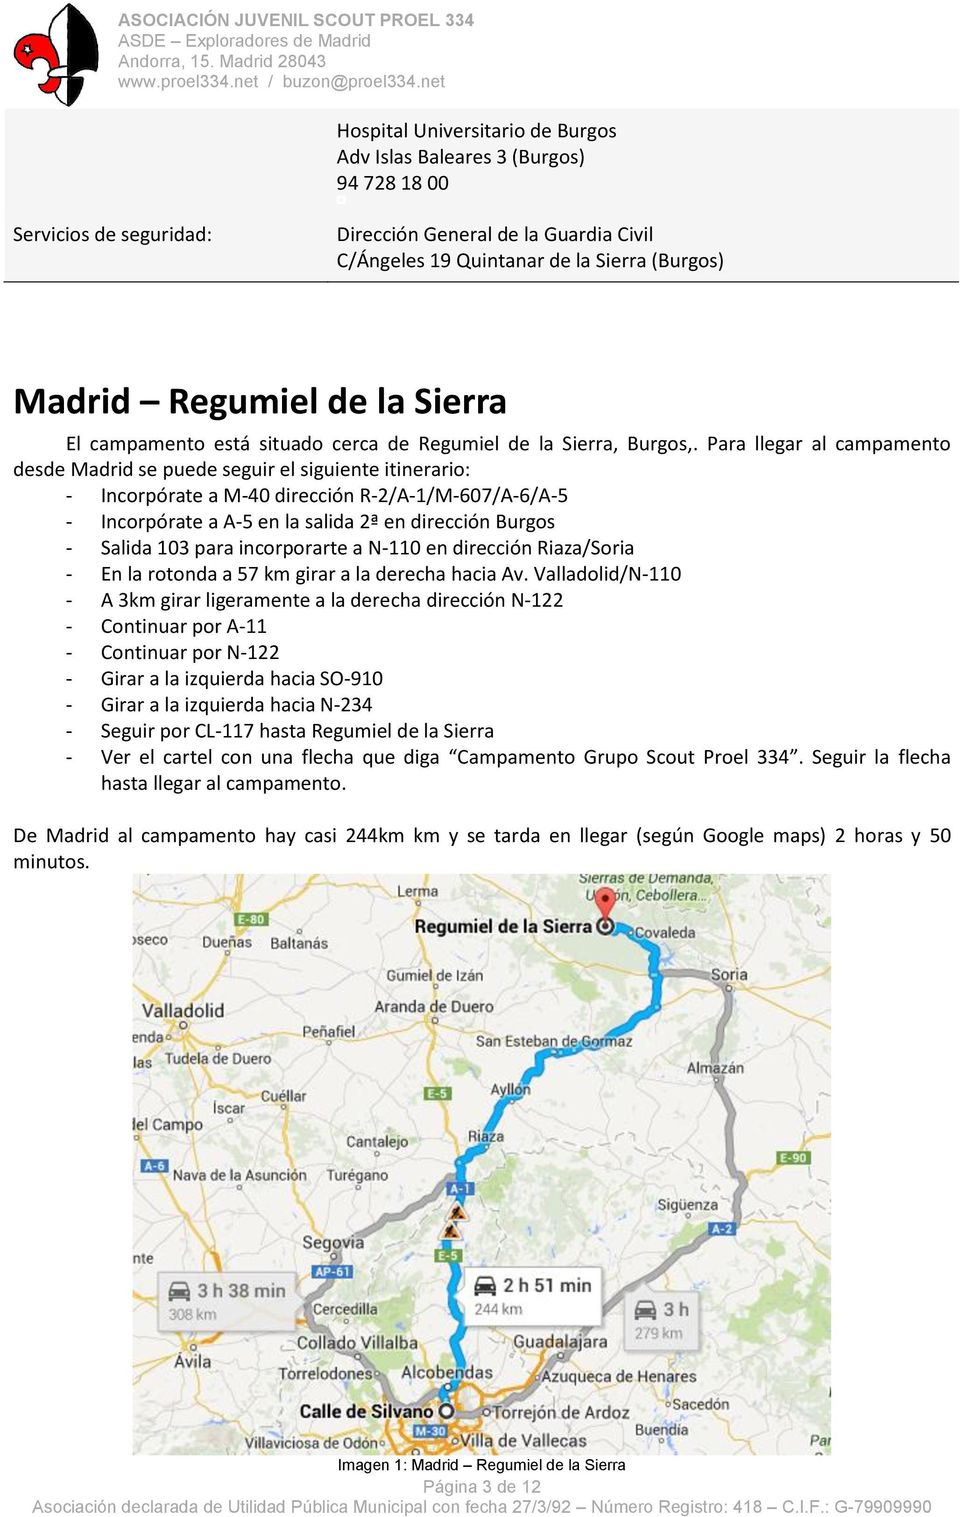 Para llegar al campamento desde Madrid se puede seguir el siguiente itinerario: - Incorpórate a M-40 dirección R-2/A-1/M-607/A-6/A-5 - Incorpórate a A-5 en la salida 2ª en dirección Burgos - Salida